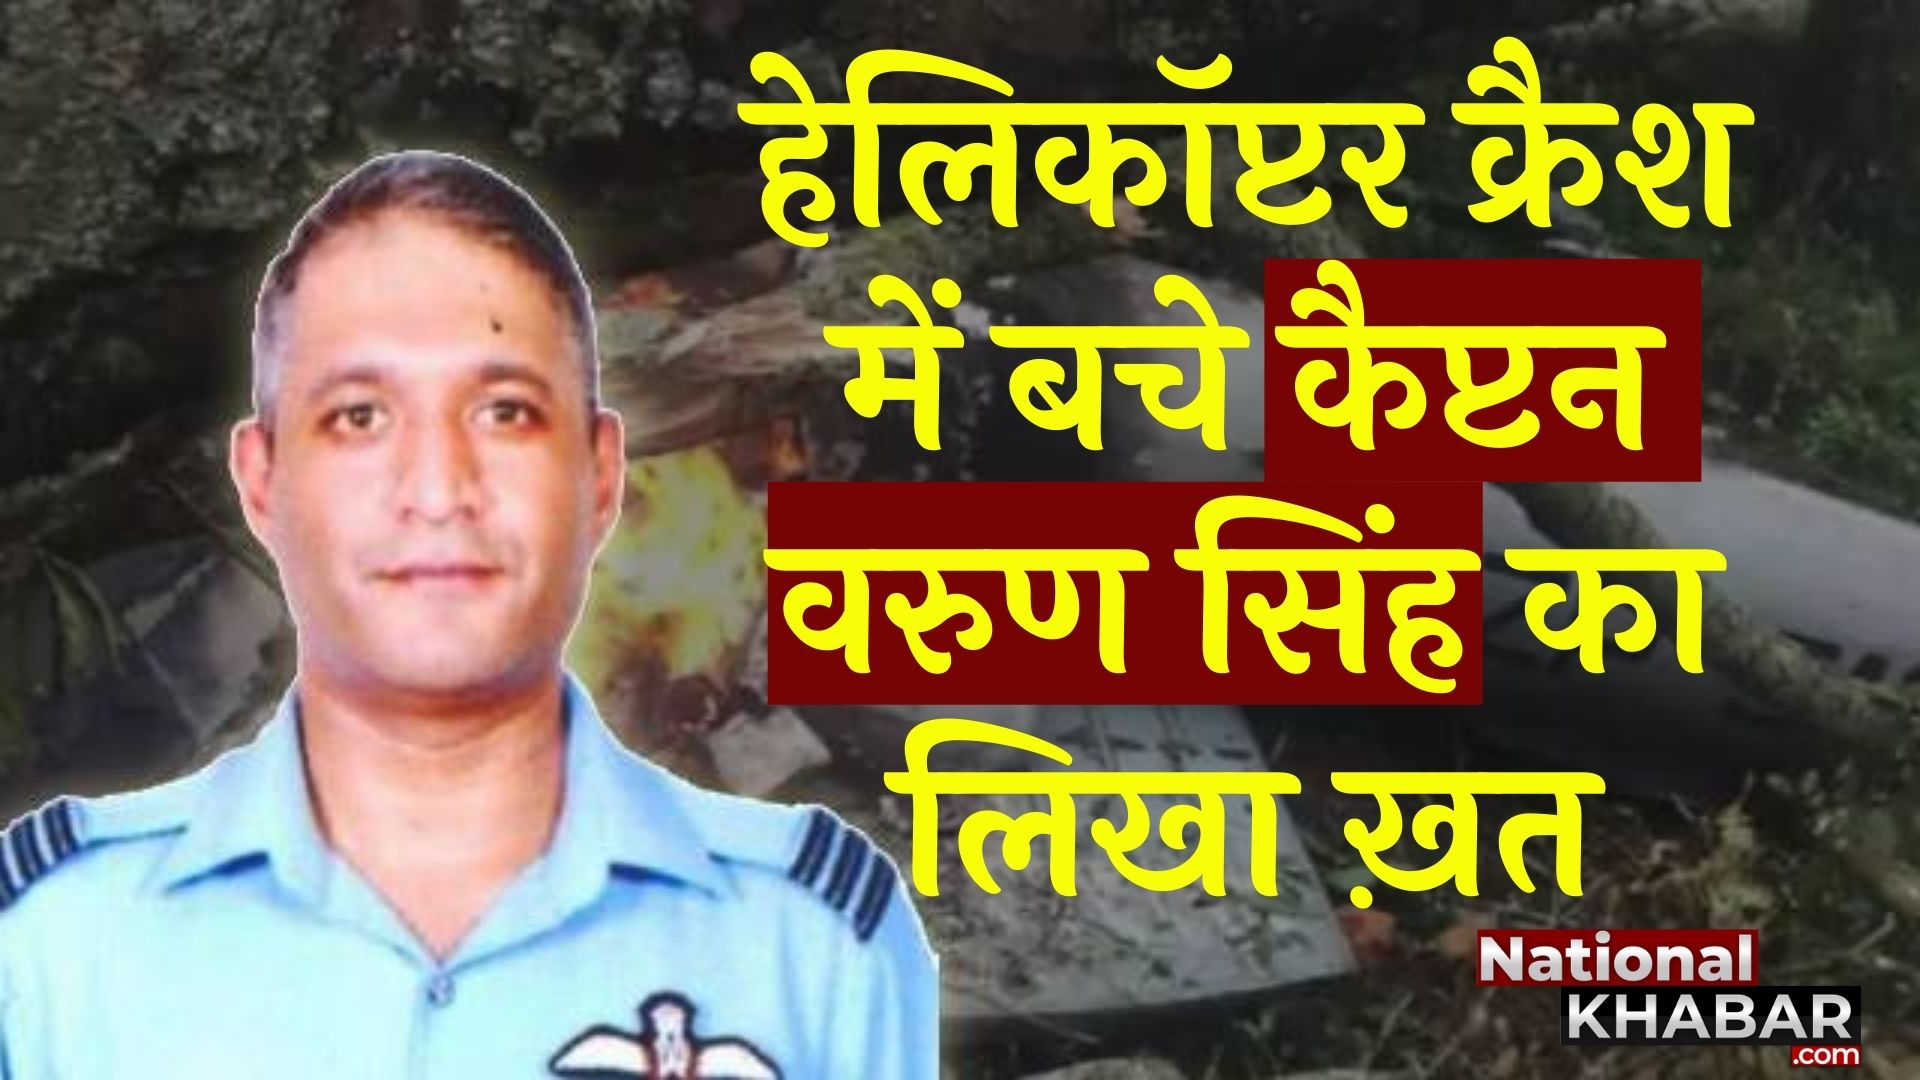 हेलिकॉप्टर क्रैश में बचे Gp Capt Varun Singh का लिखा वो खत जो सोशल मीडिया पर वायरल हो रहा है